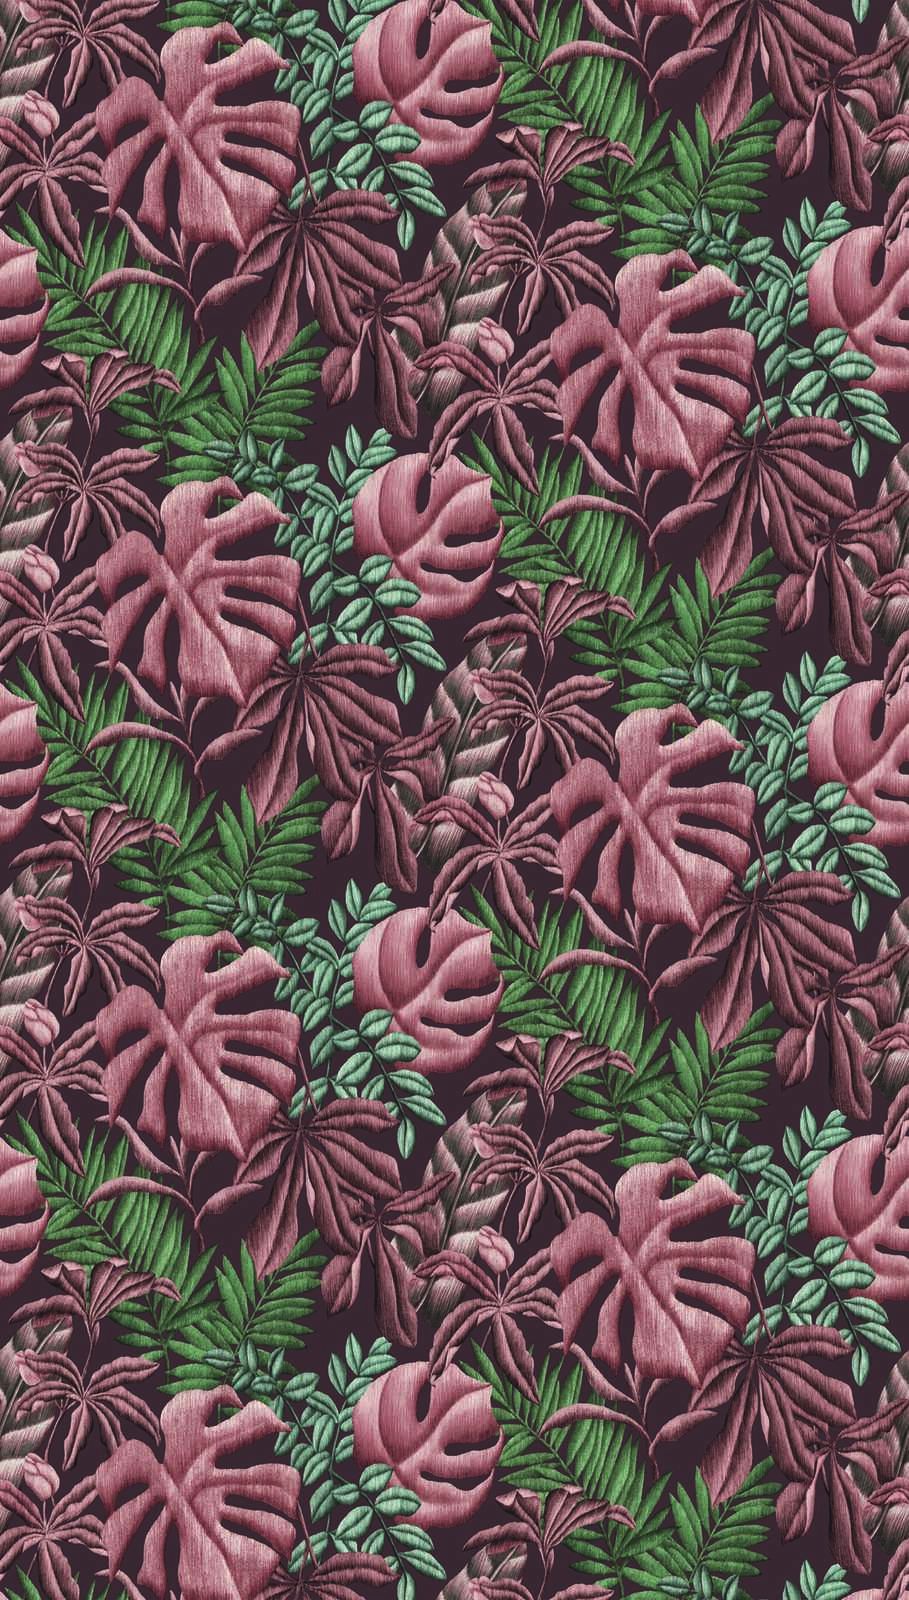             Papier peint intissé floral avec feuilles Fougère & feuilles de bananier - rose, vert, turquoise
        